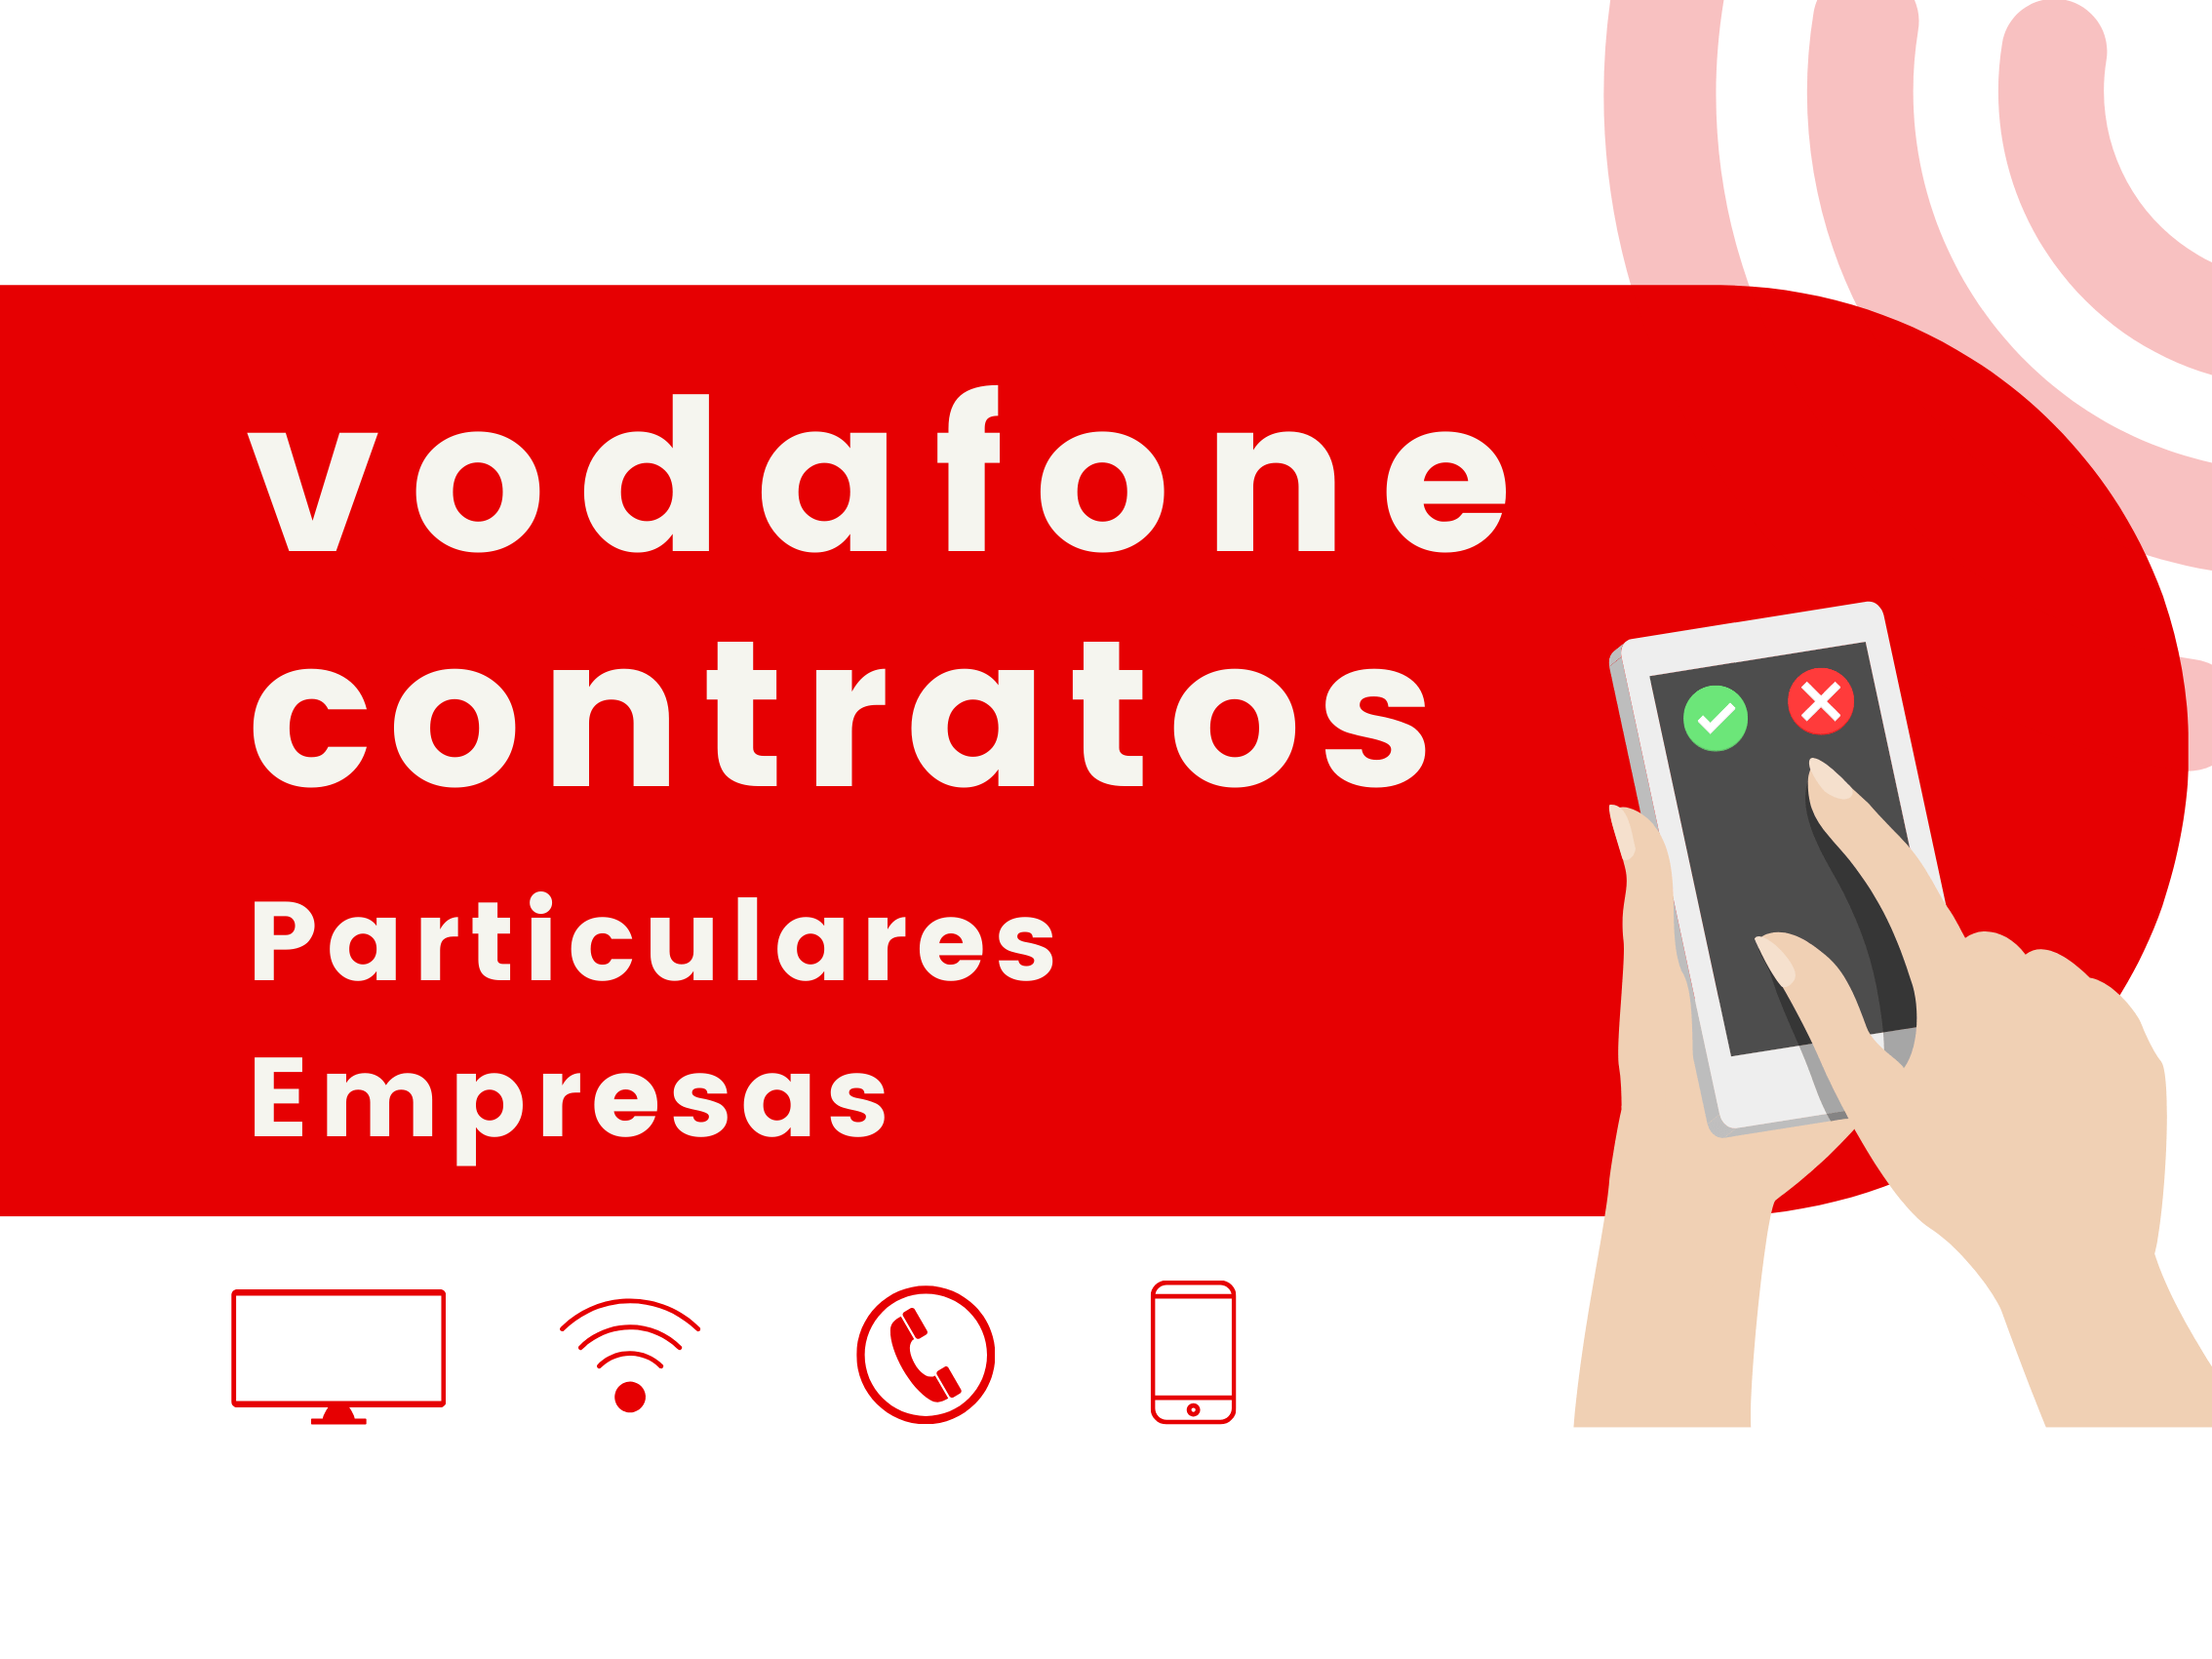 Vodafone Contratos